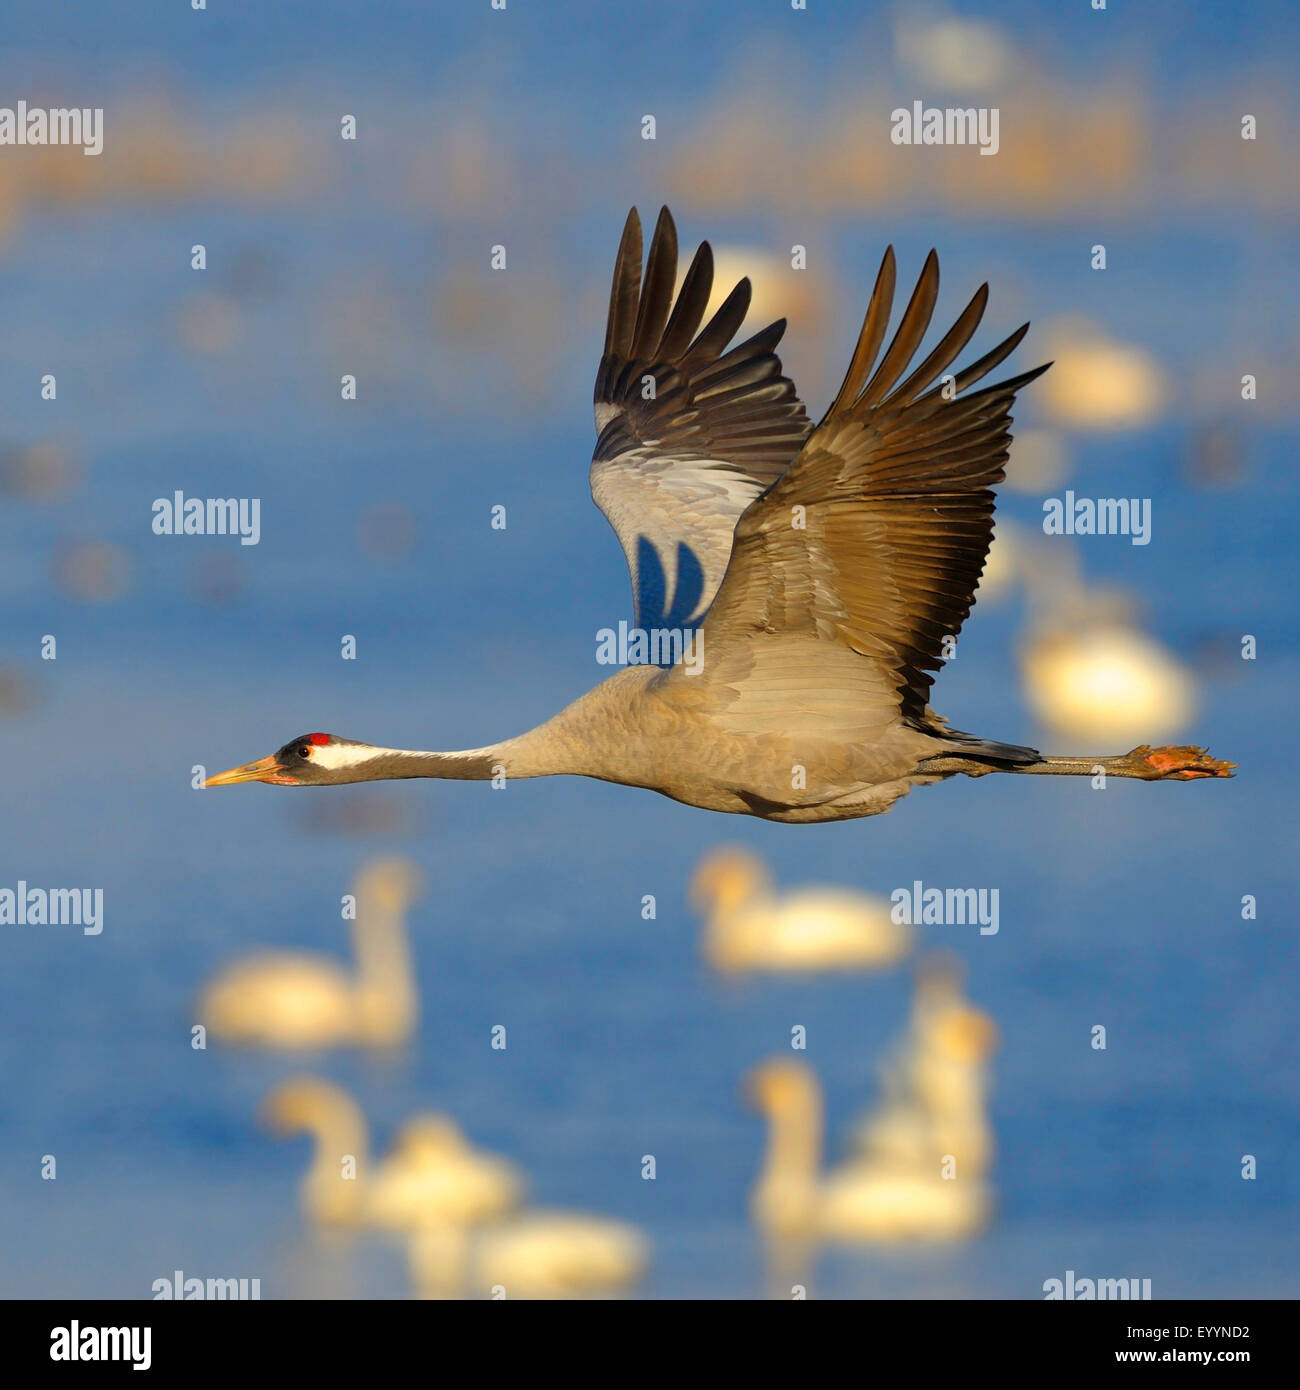 Common crane, Eurasian Crane (Grus grus), in flight, Sweden, Hornborga Lake Stock Photo